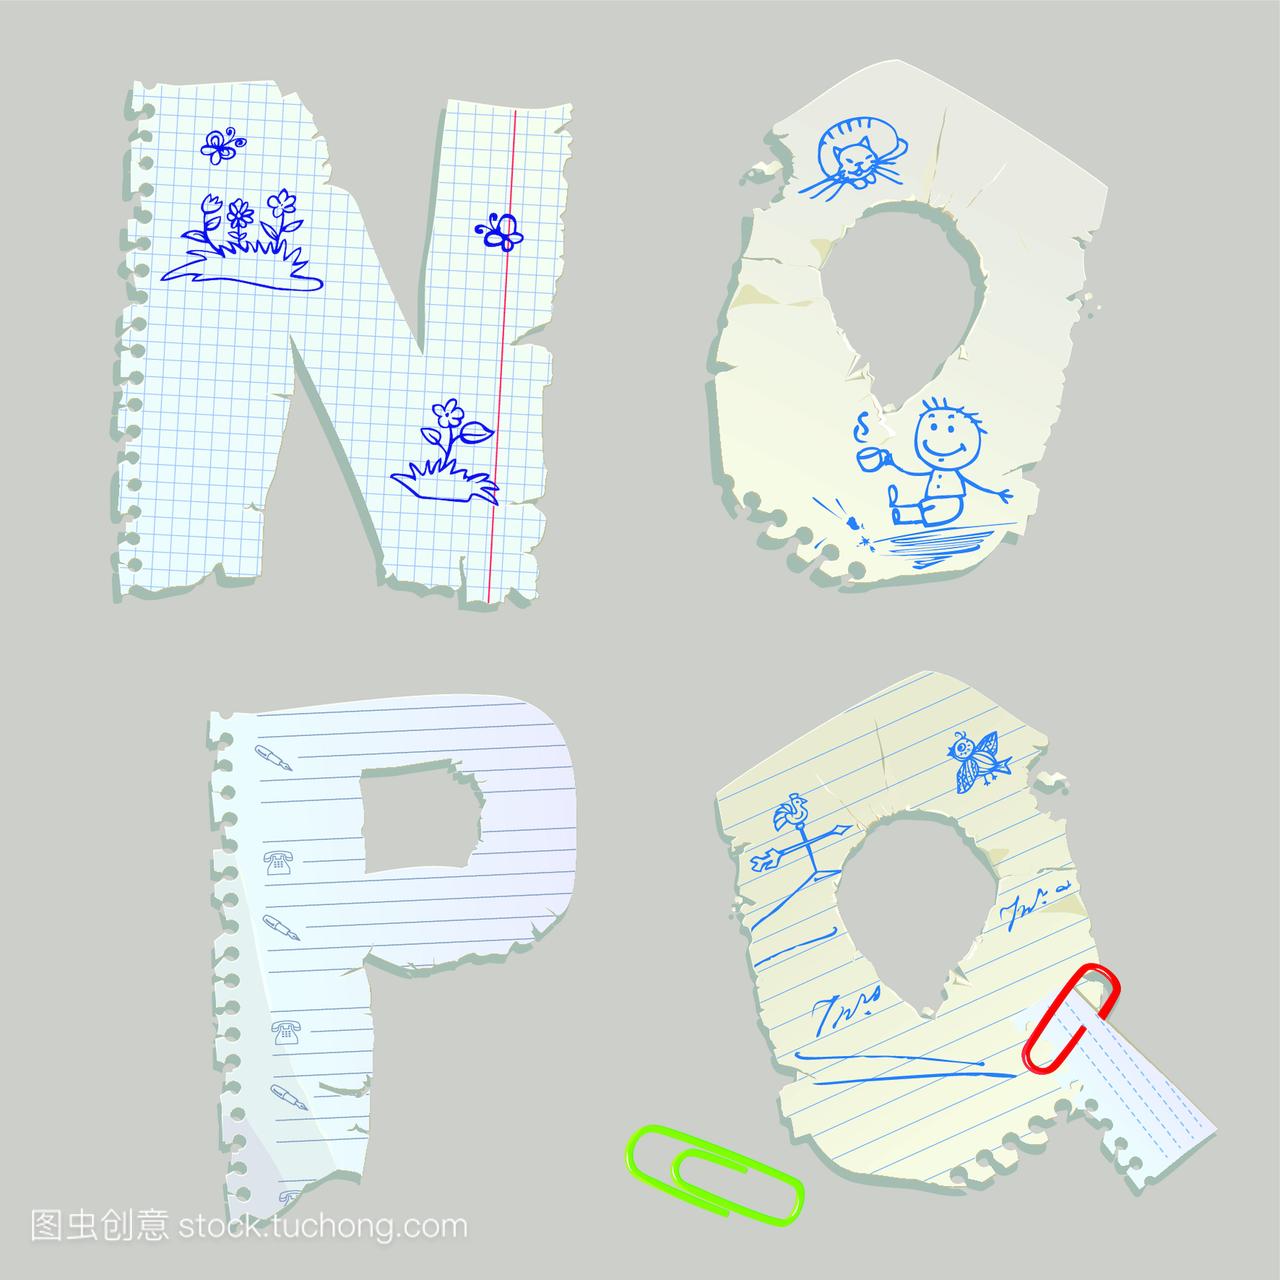 英文字母是用旧的纸做的,字母nopq